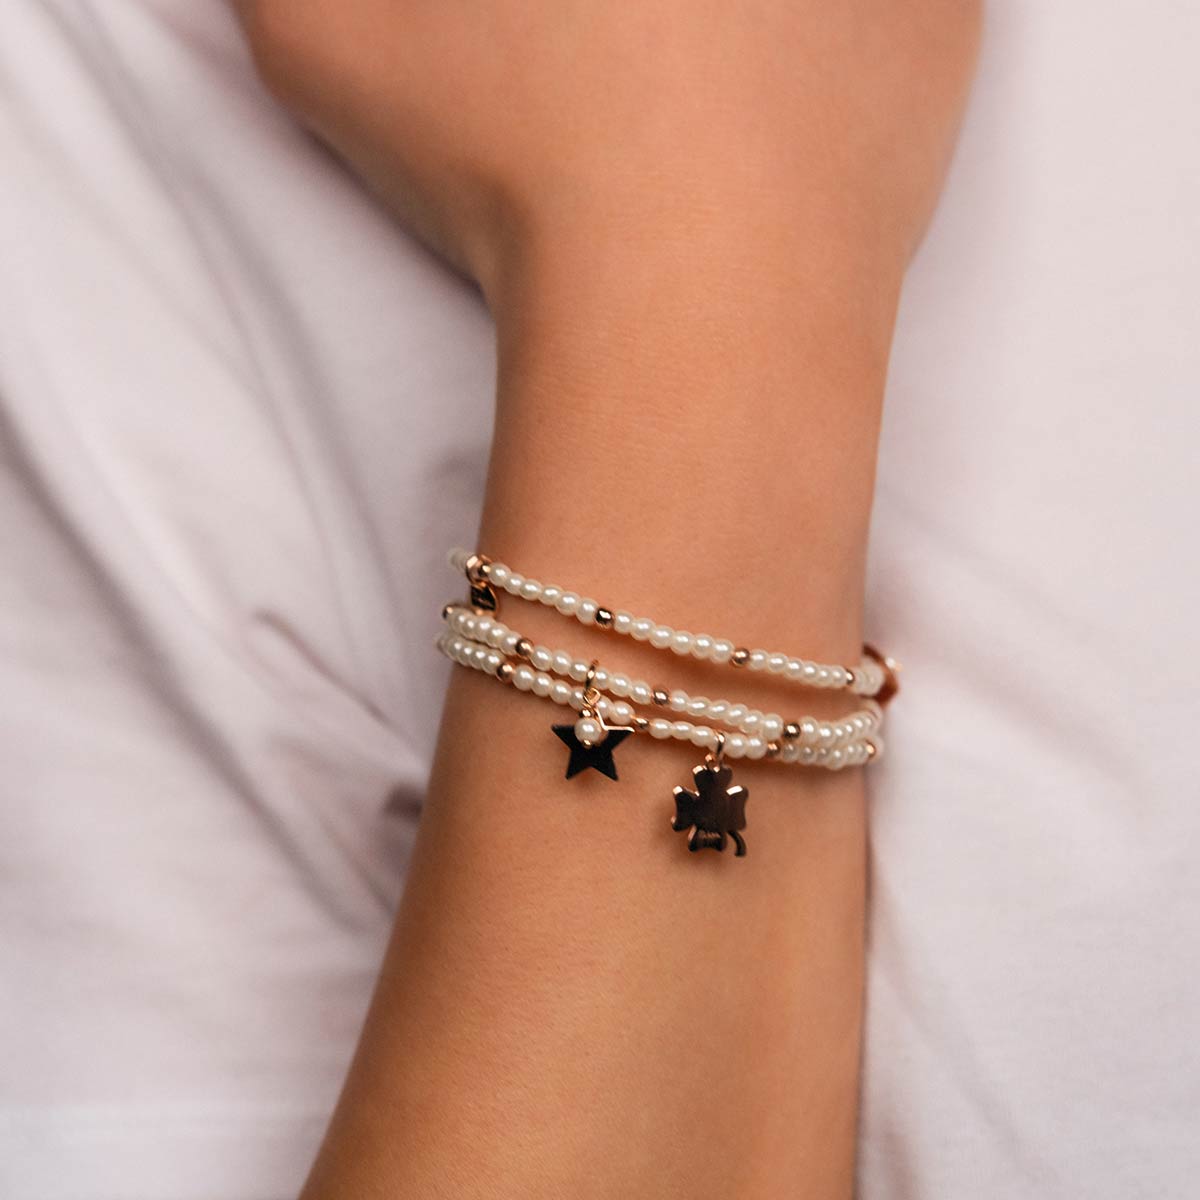 Bracelets - Elastic bracelet with pearls and balls - CLOVER - 3 | Rue des Mille